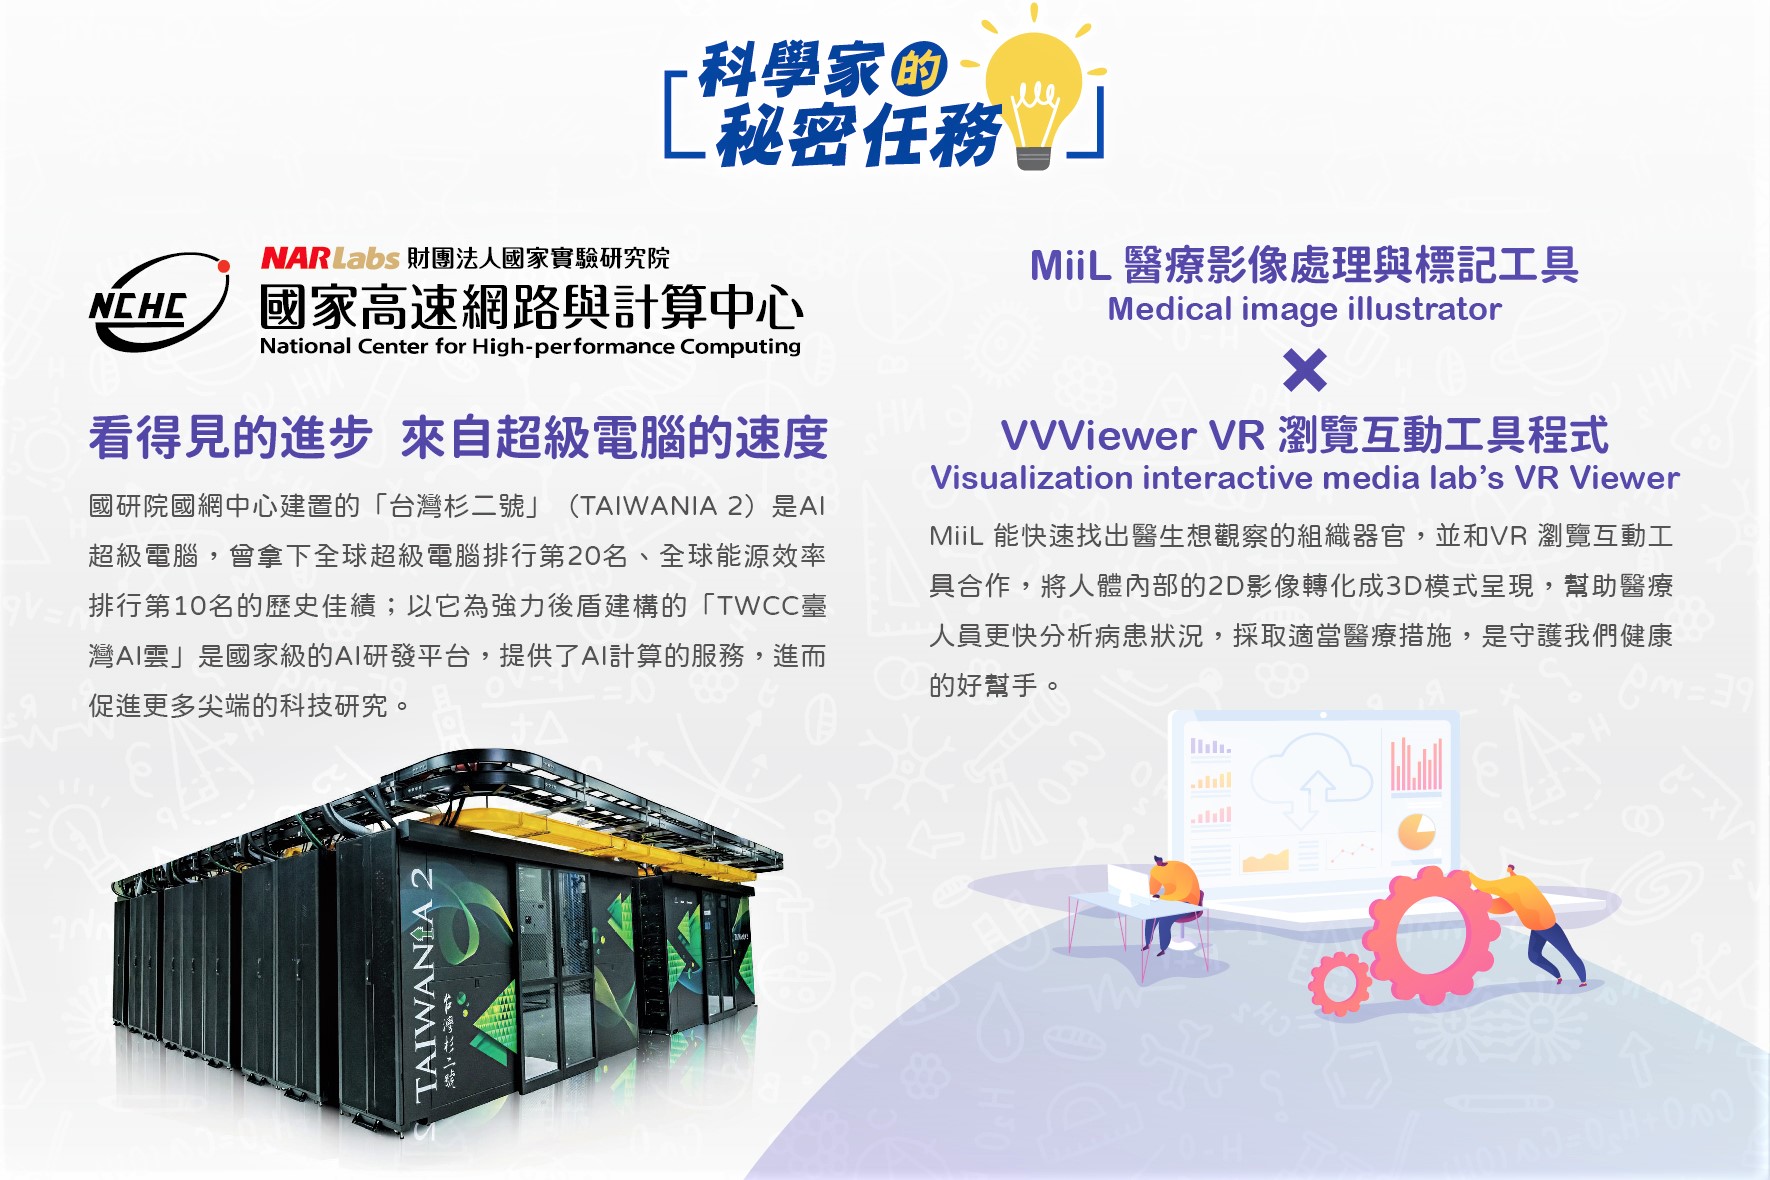 國網中心展示AR/VR醫療影像探索